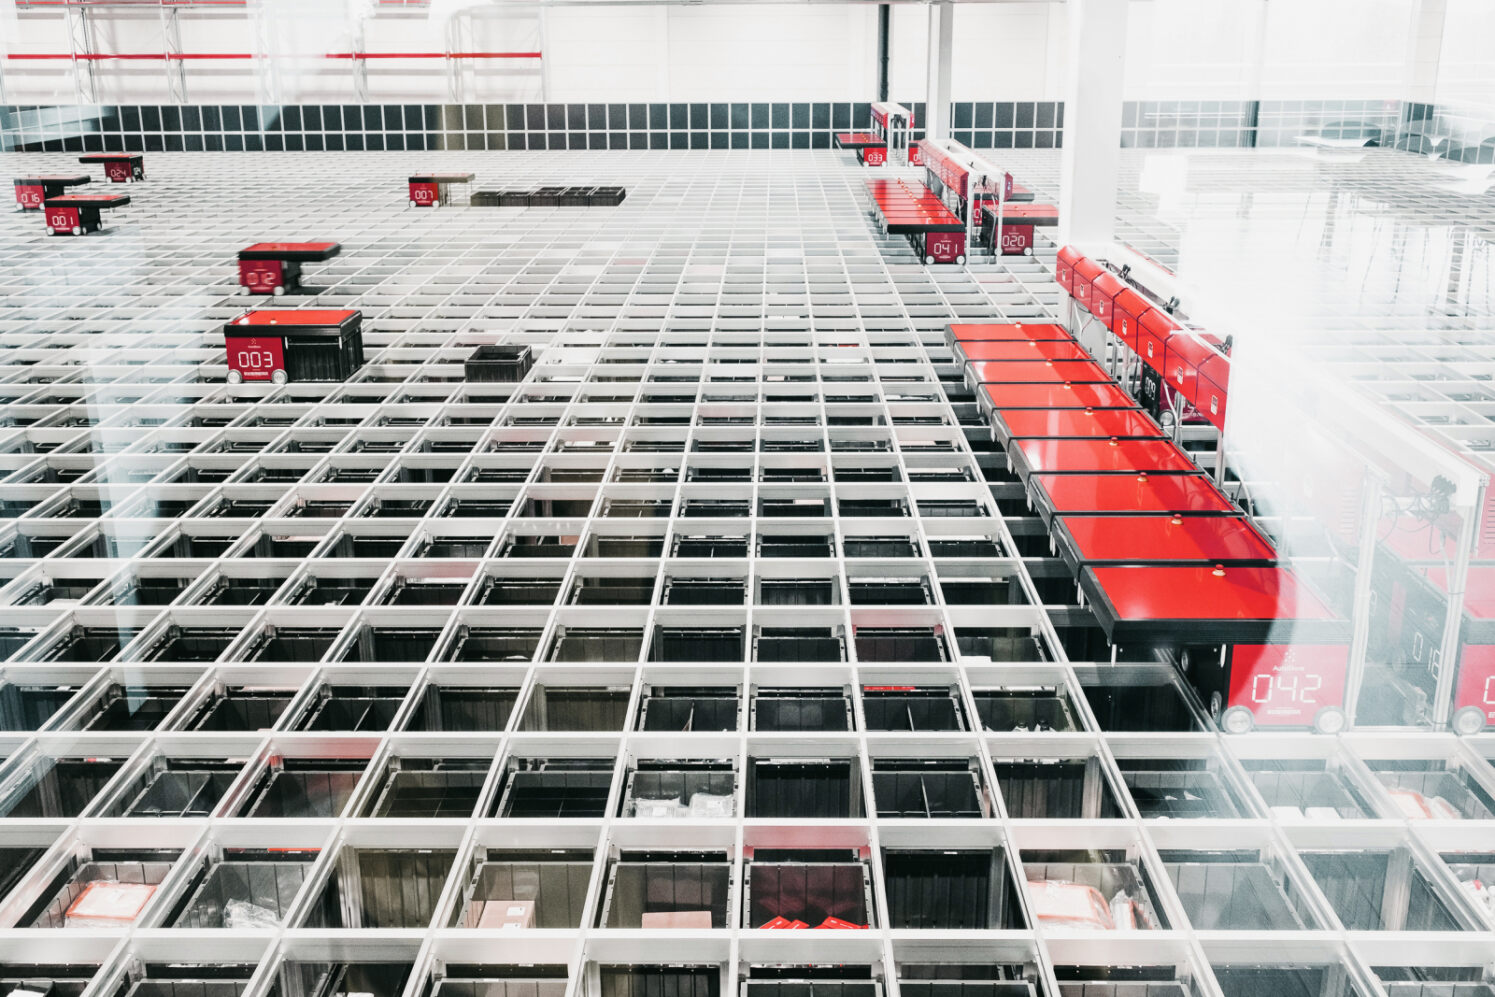 Sistema automatizado de almacenamiento con robots operando en un almacén sostenible AutoStore.